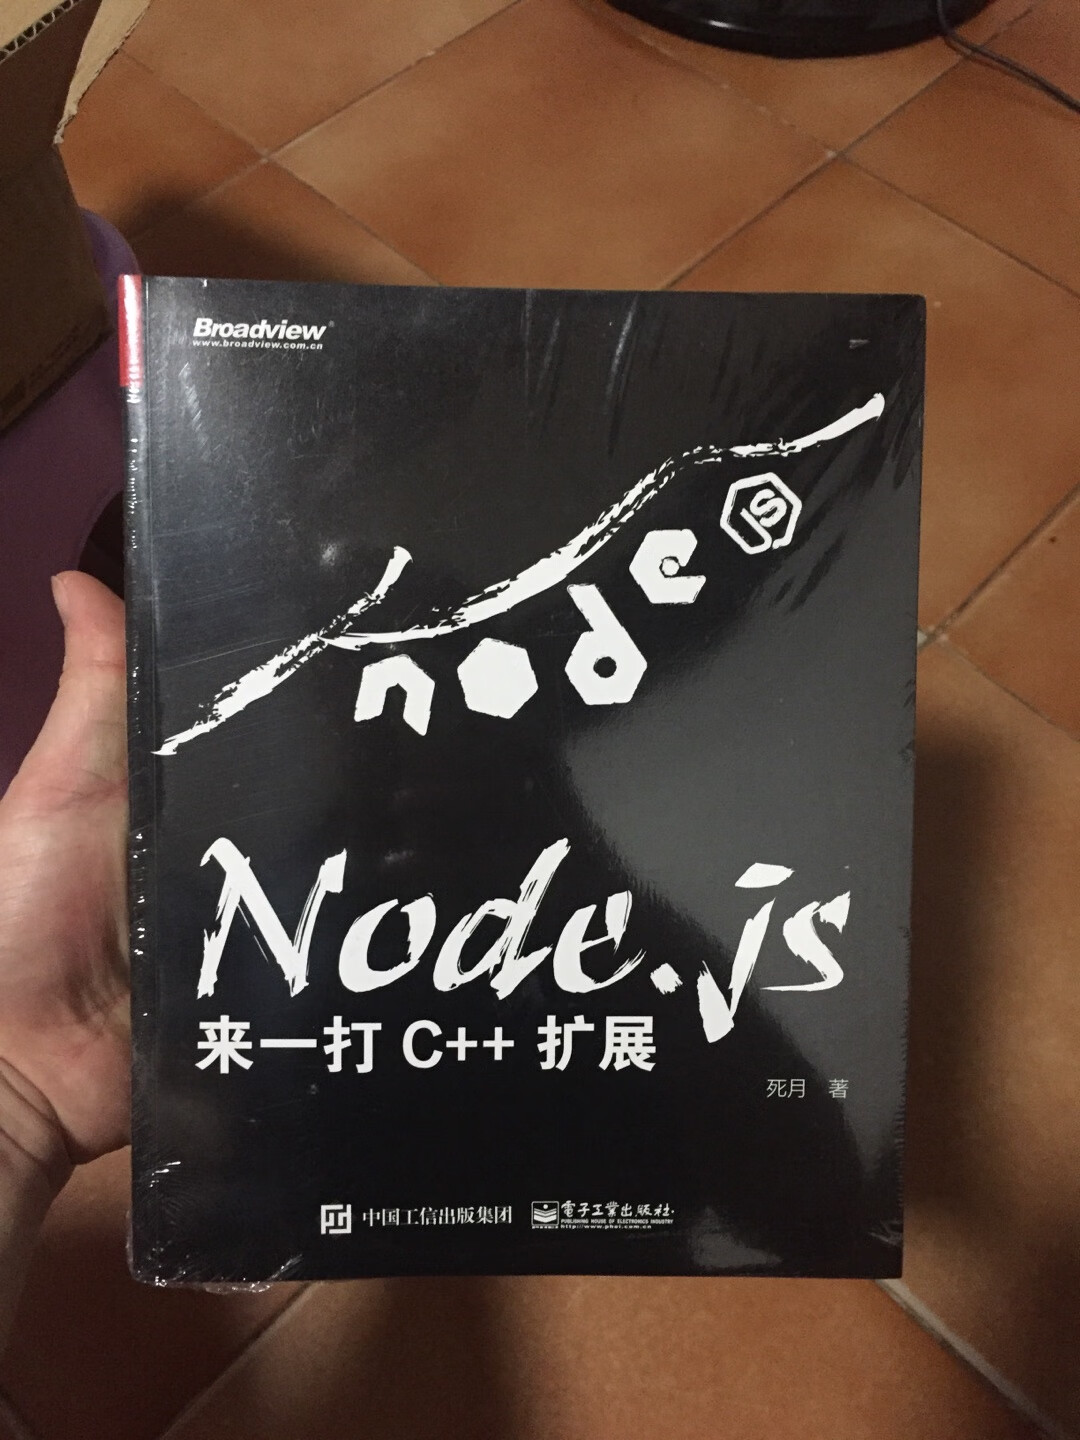 感觉还不错，node.js很不错的书籍！